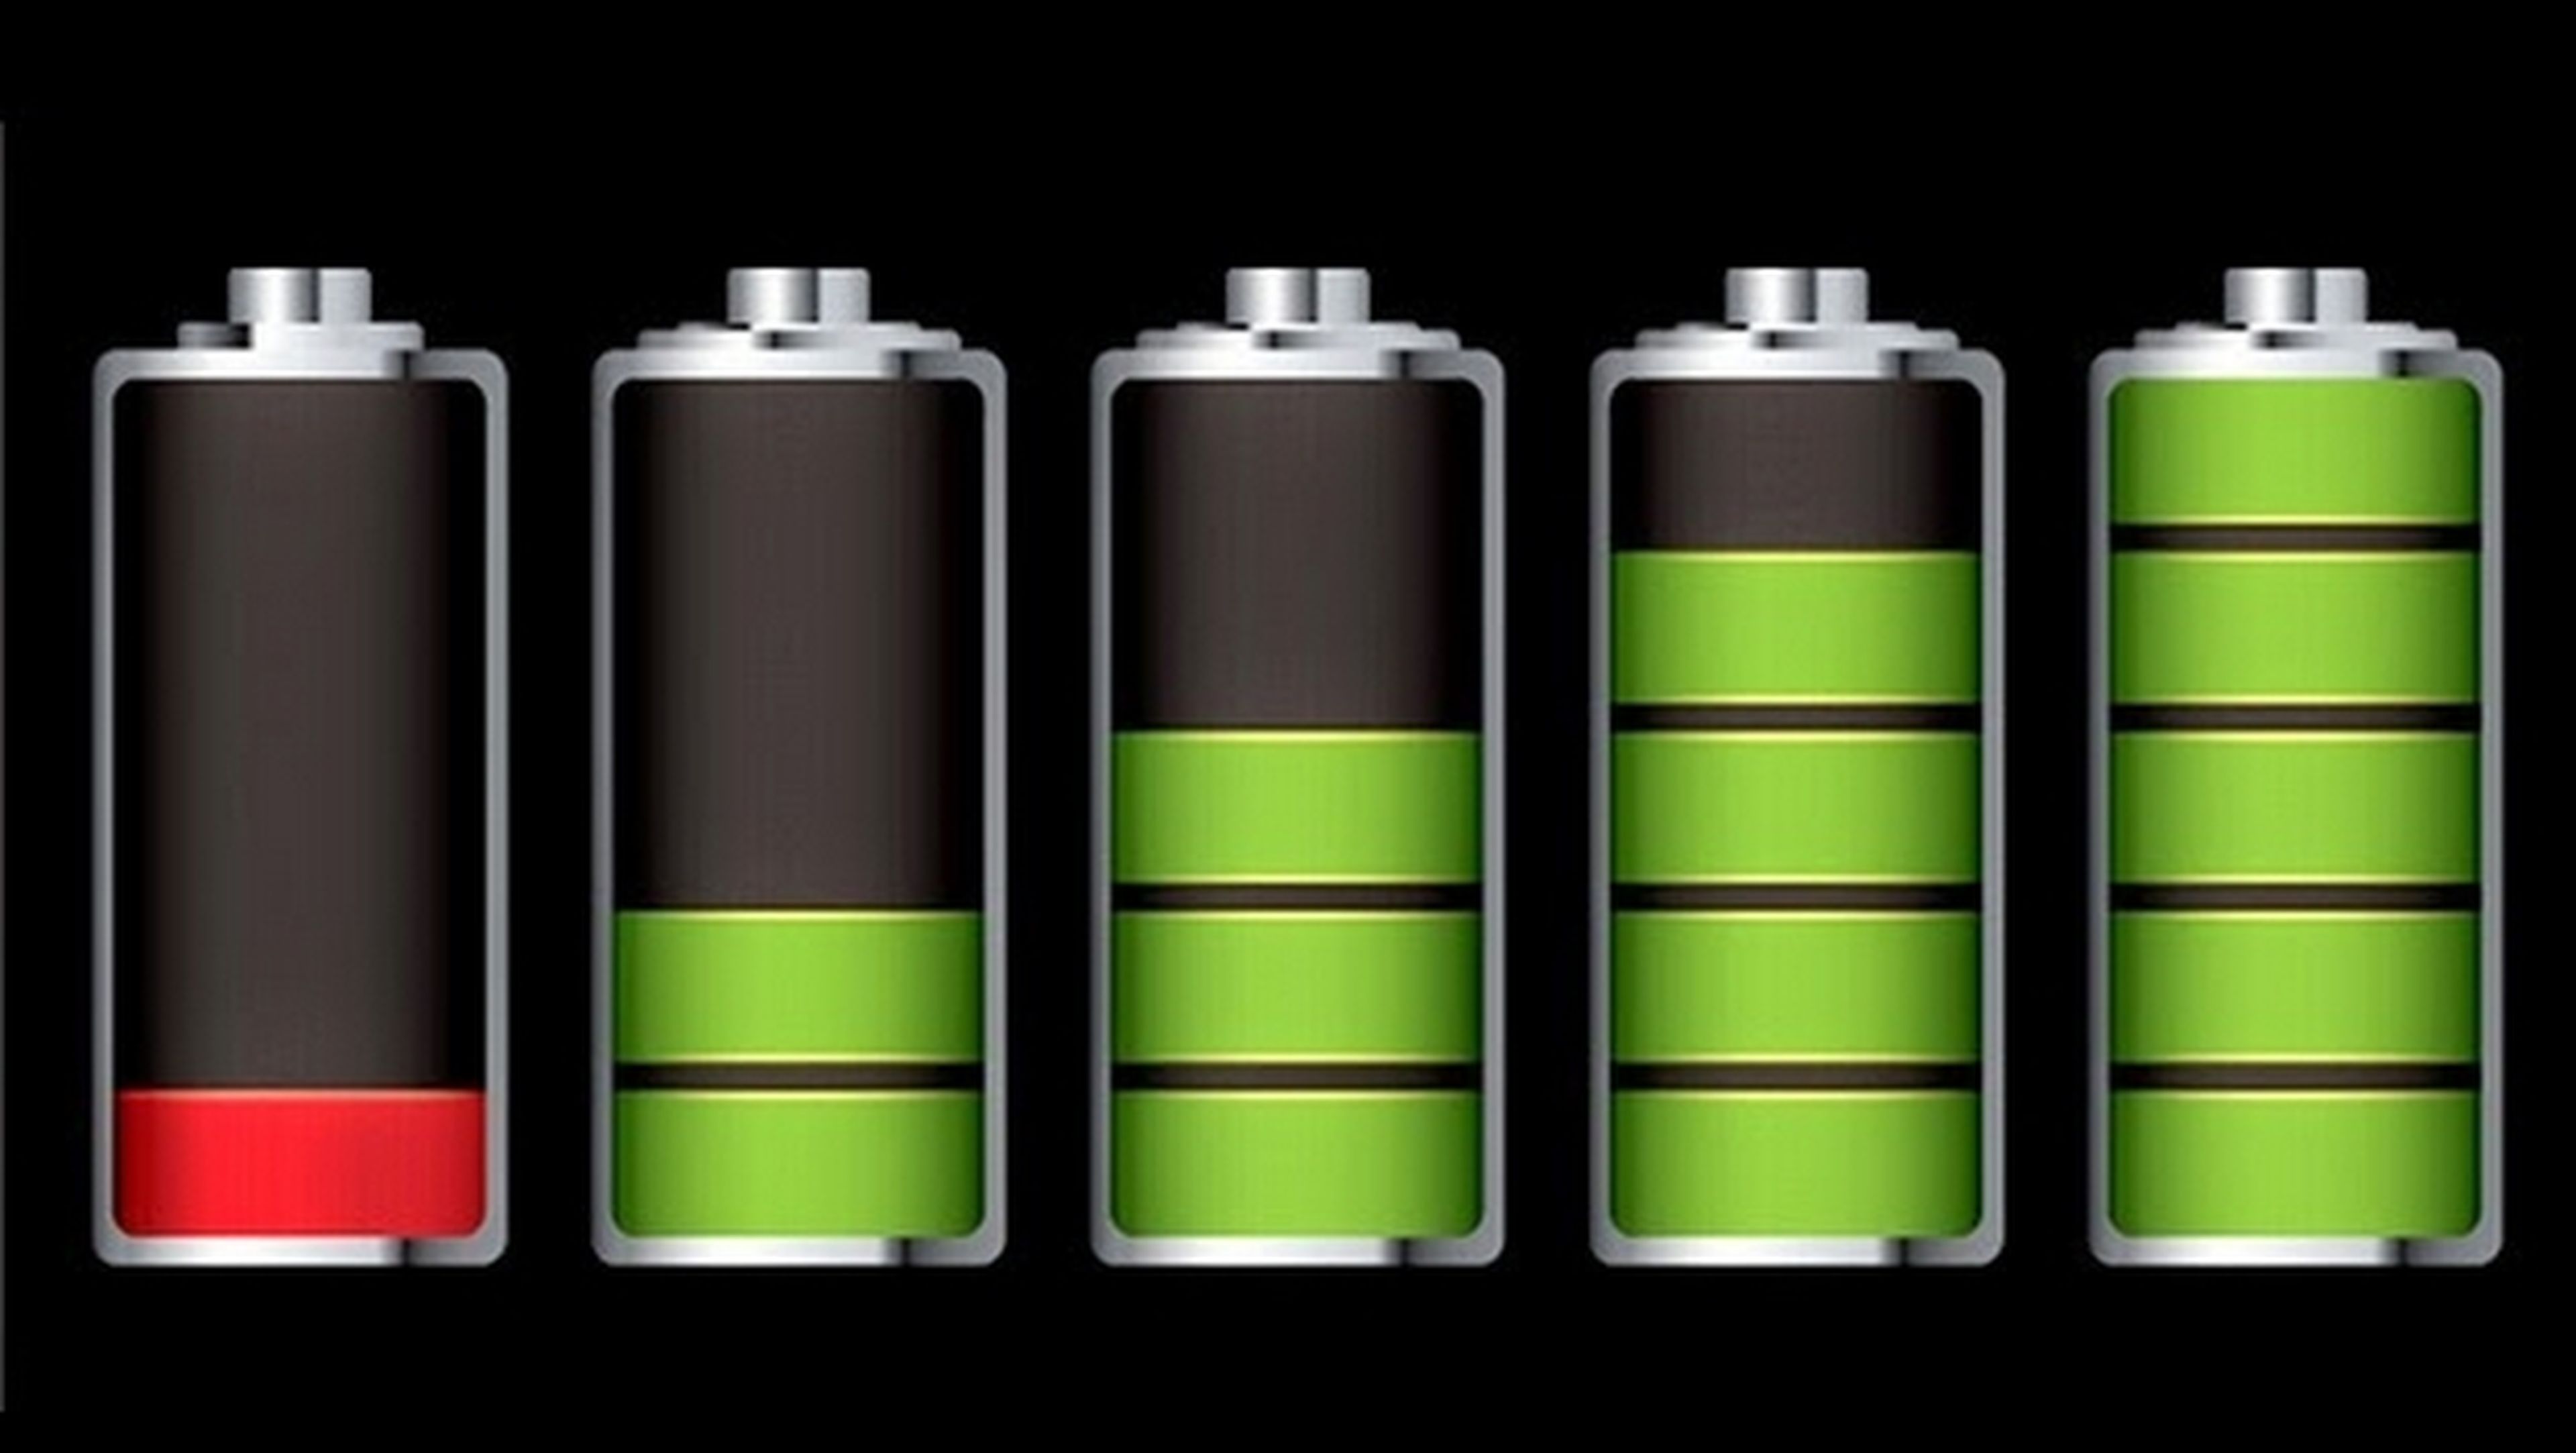 Cómo ahorrar batería, según tu marca y modelo de smartphone.